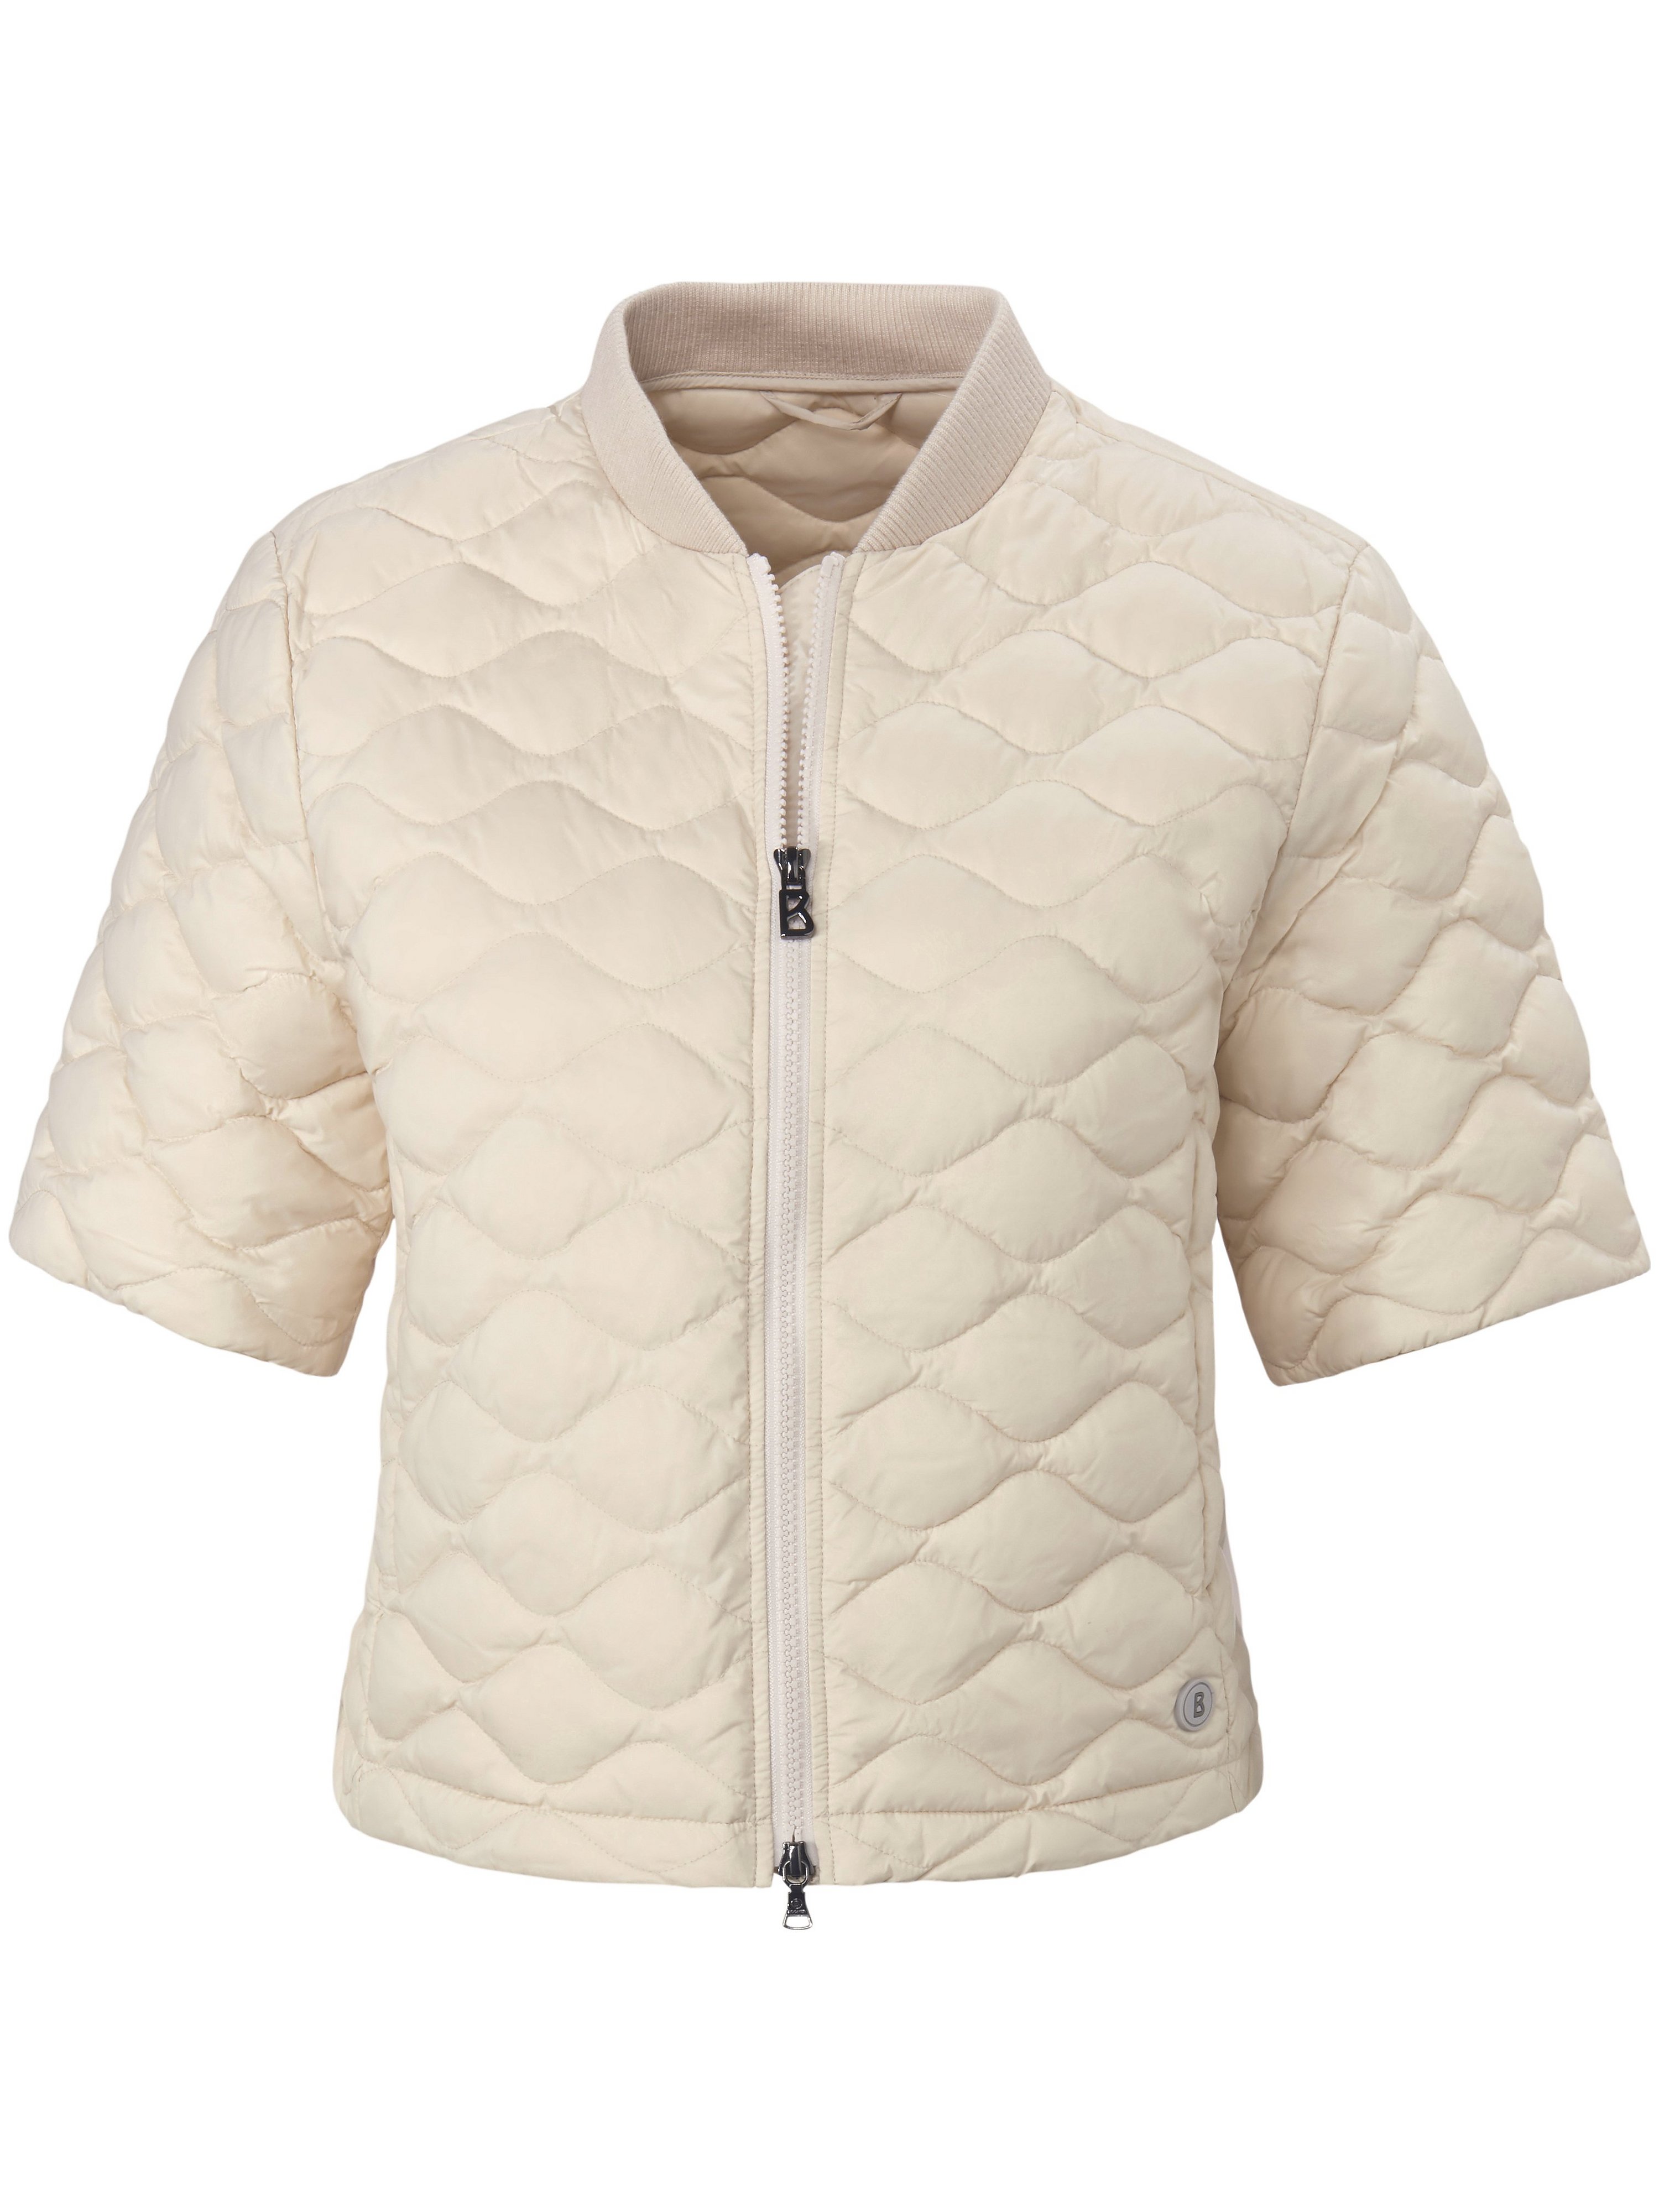 Quilted jacket Bogner white